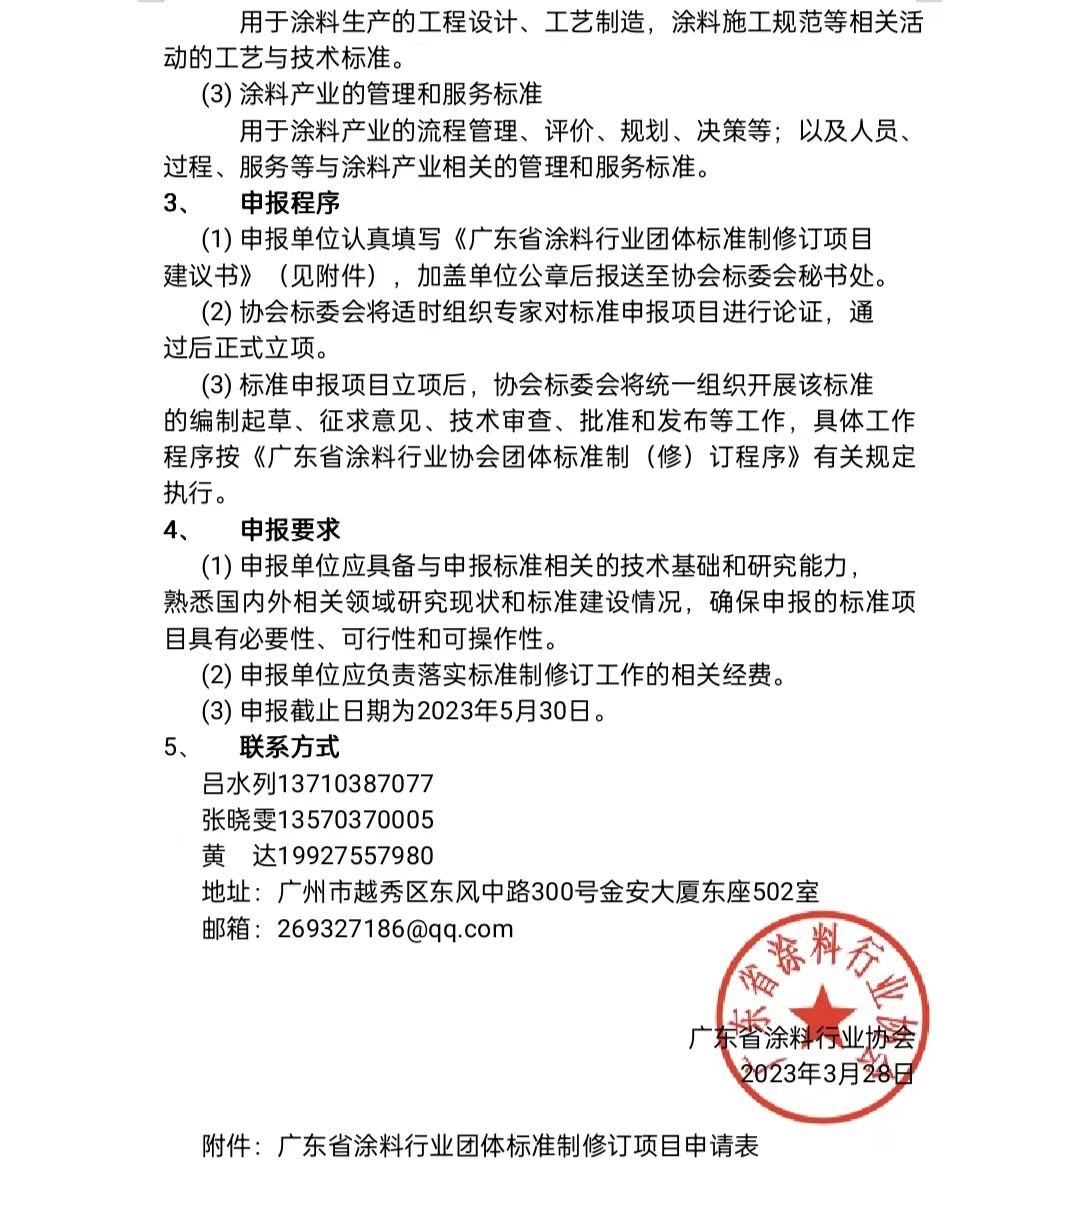 【通知】关于征集2023年度（第一批）广东省涂料行业协会团体标准项目的通知